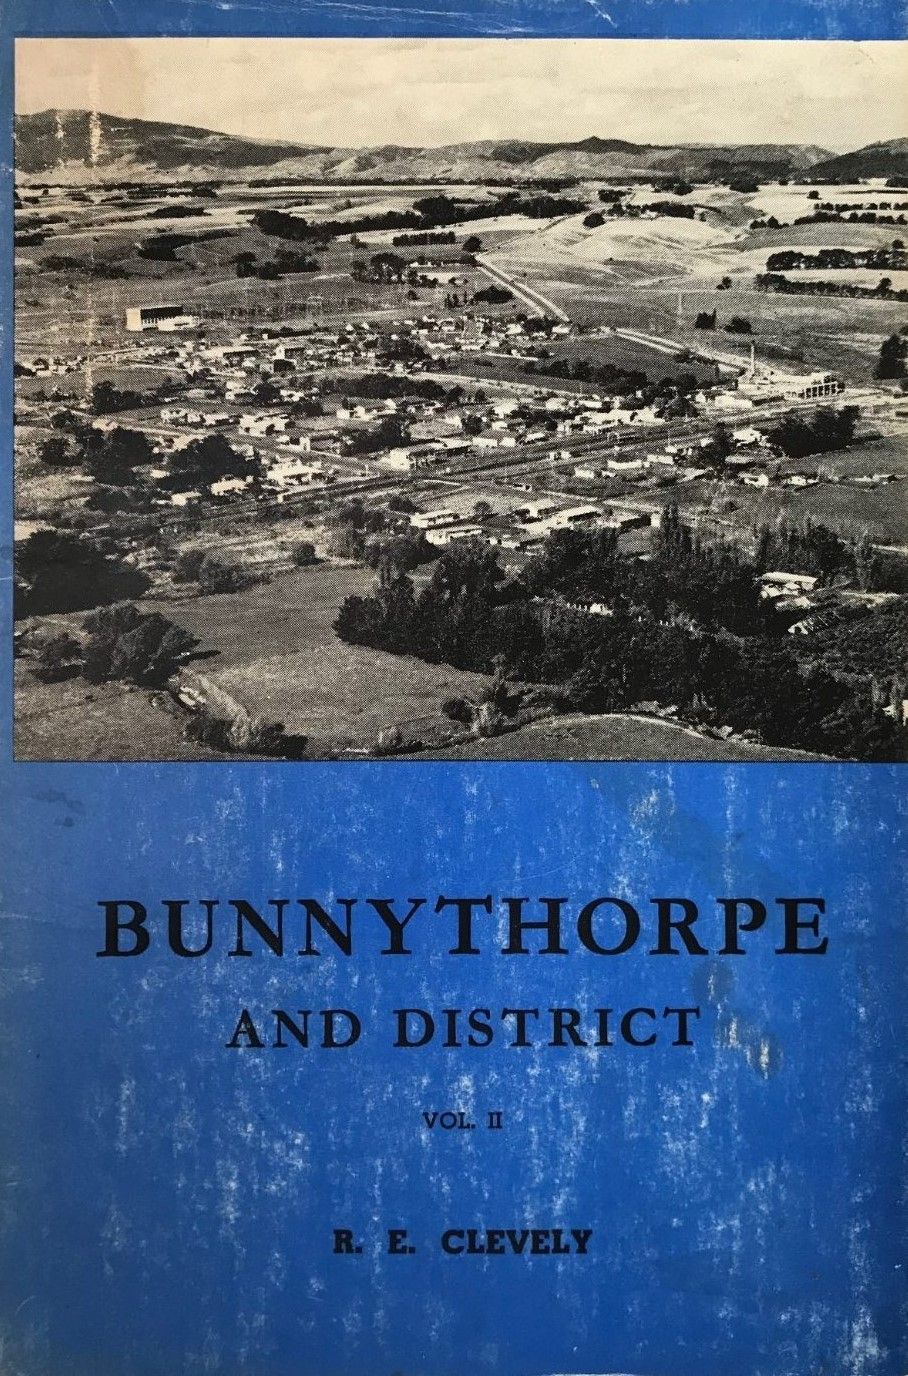 BUNNYTHORPE AND DISTRICT: Vol. II 1952-1975